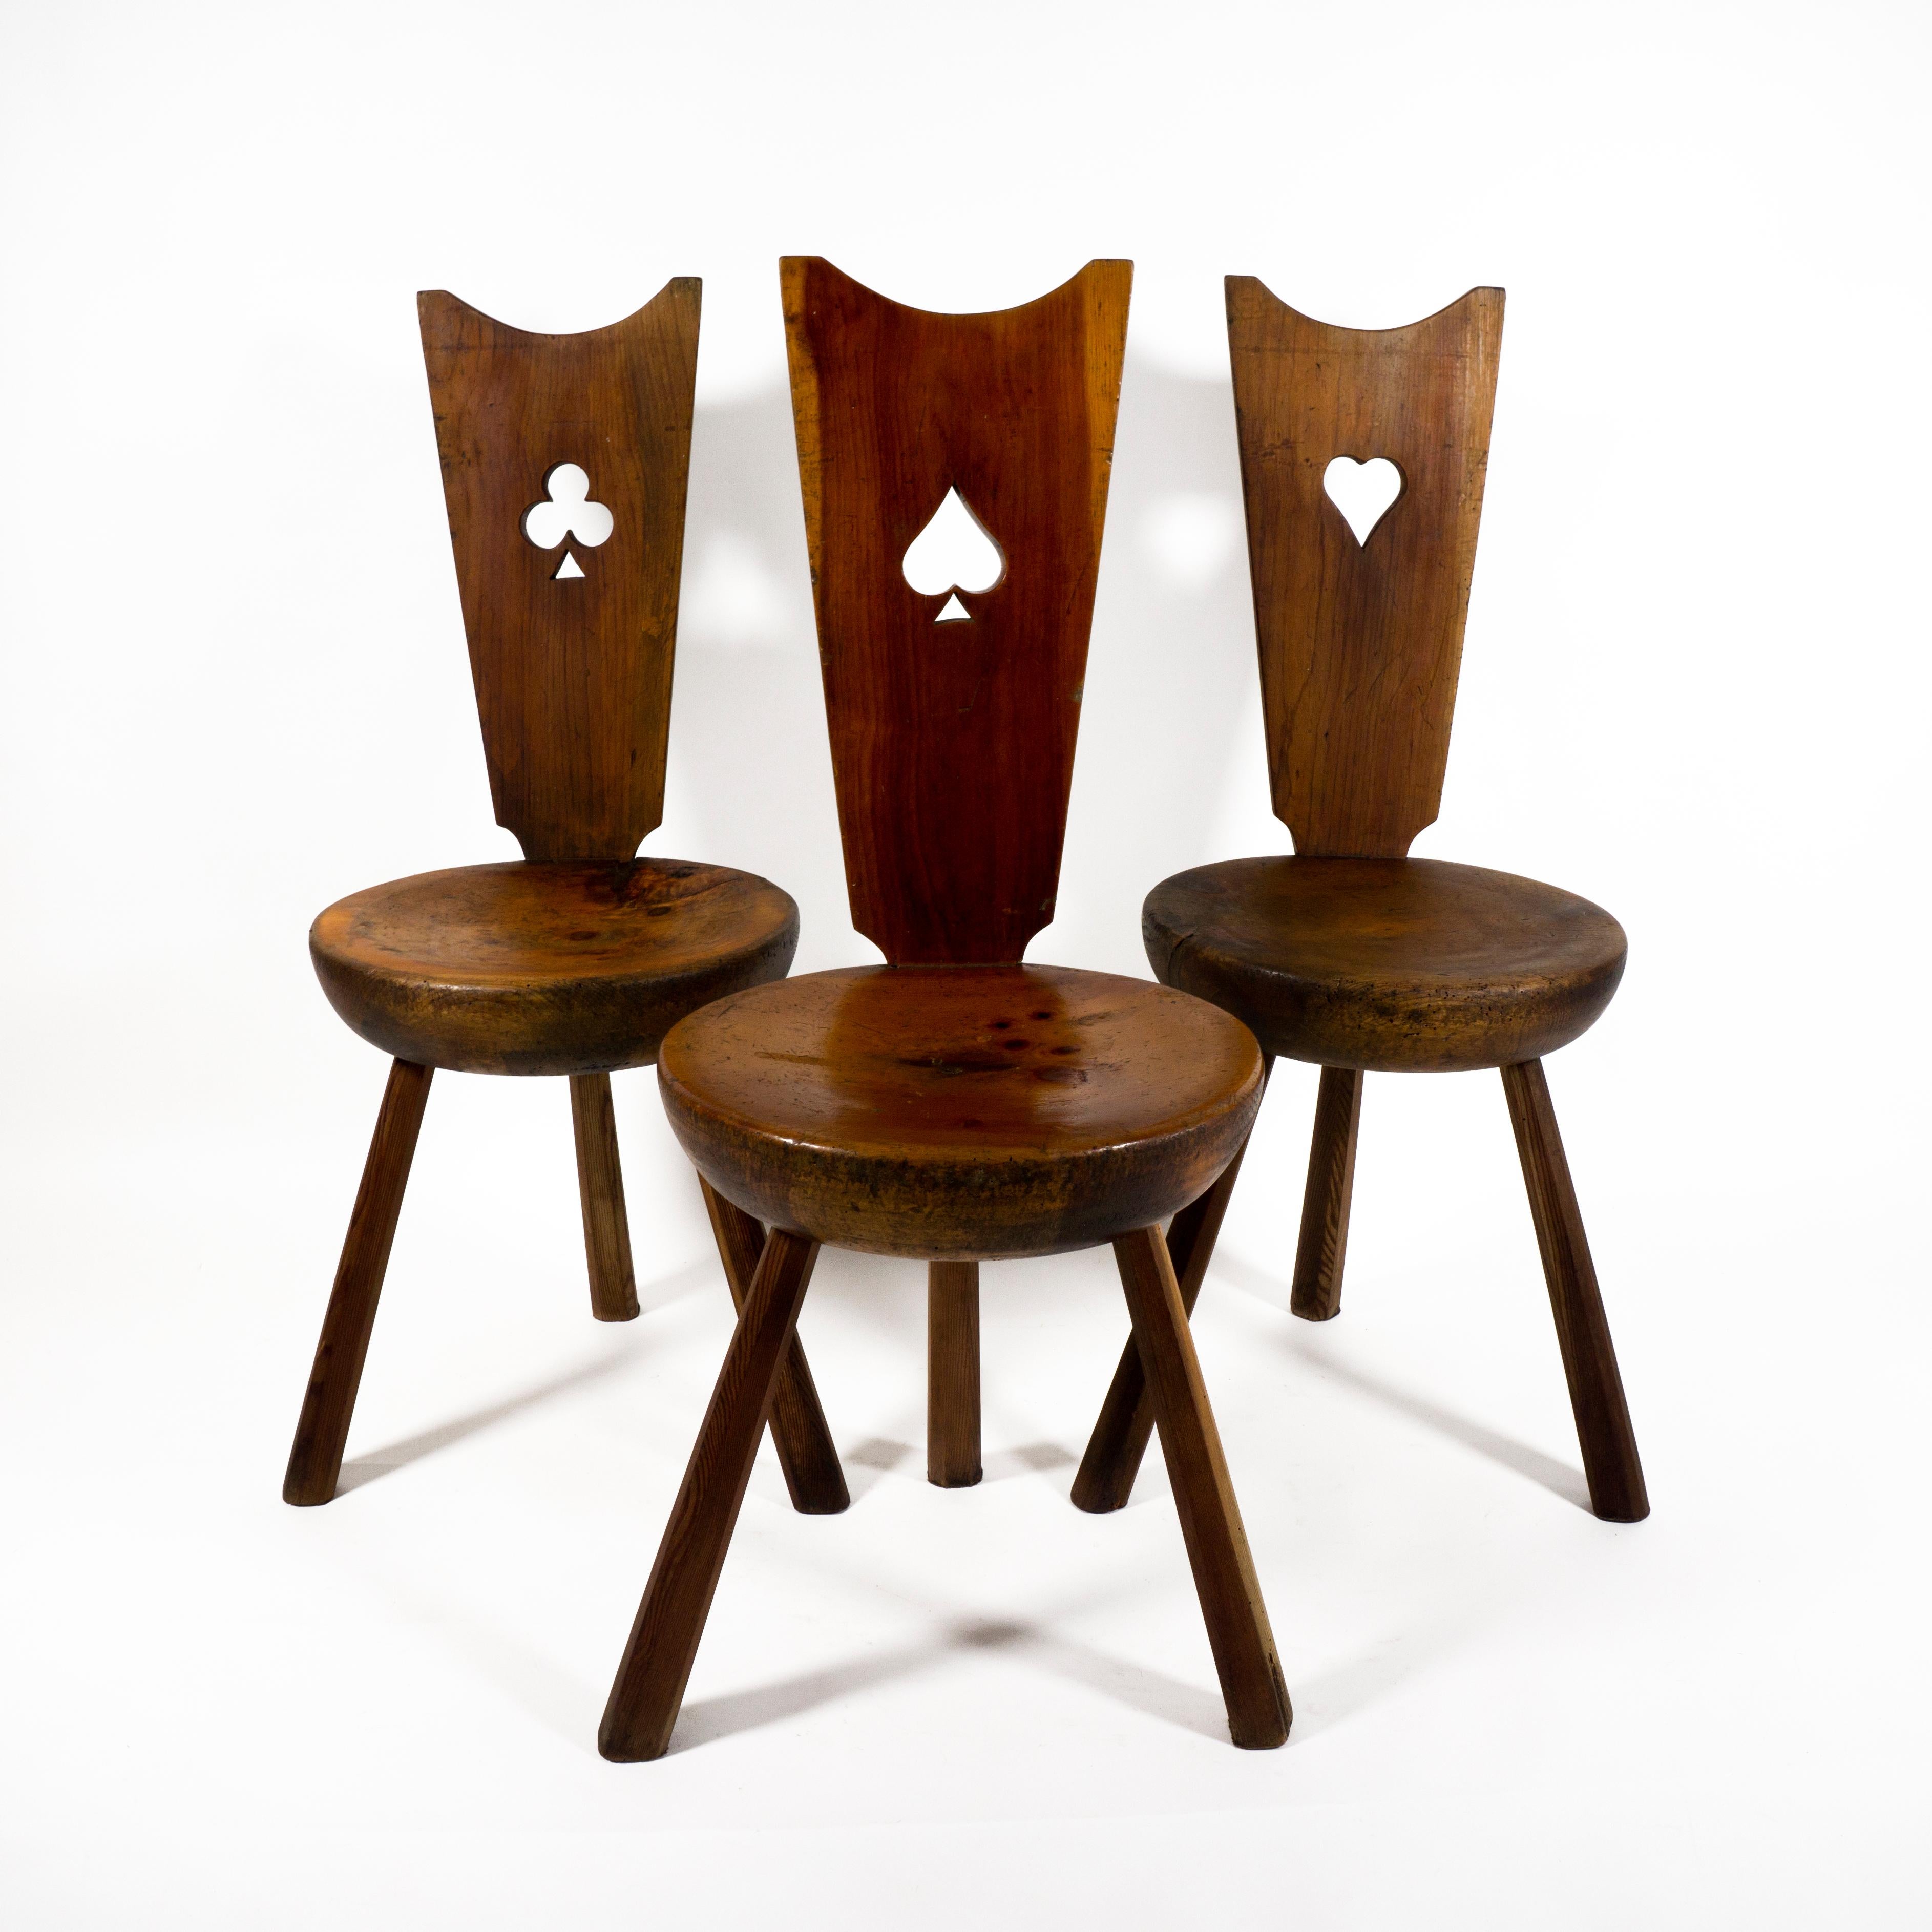 Magnifique ensemble de 3 chaises tripodes en bois massif italien avec une magnifique patine - original Mid Century.
Chaque chaise est très robuste et stable. Il n'est pas bancal et est conçu pour durer.
Les chaises à cartes (Club, Pique et Cœur)